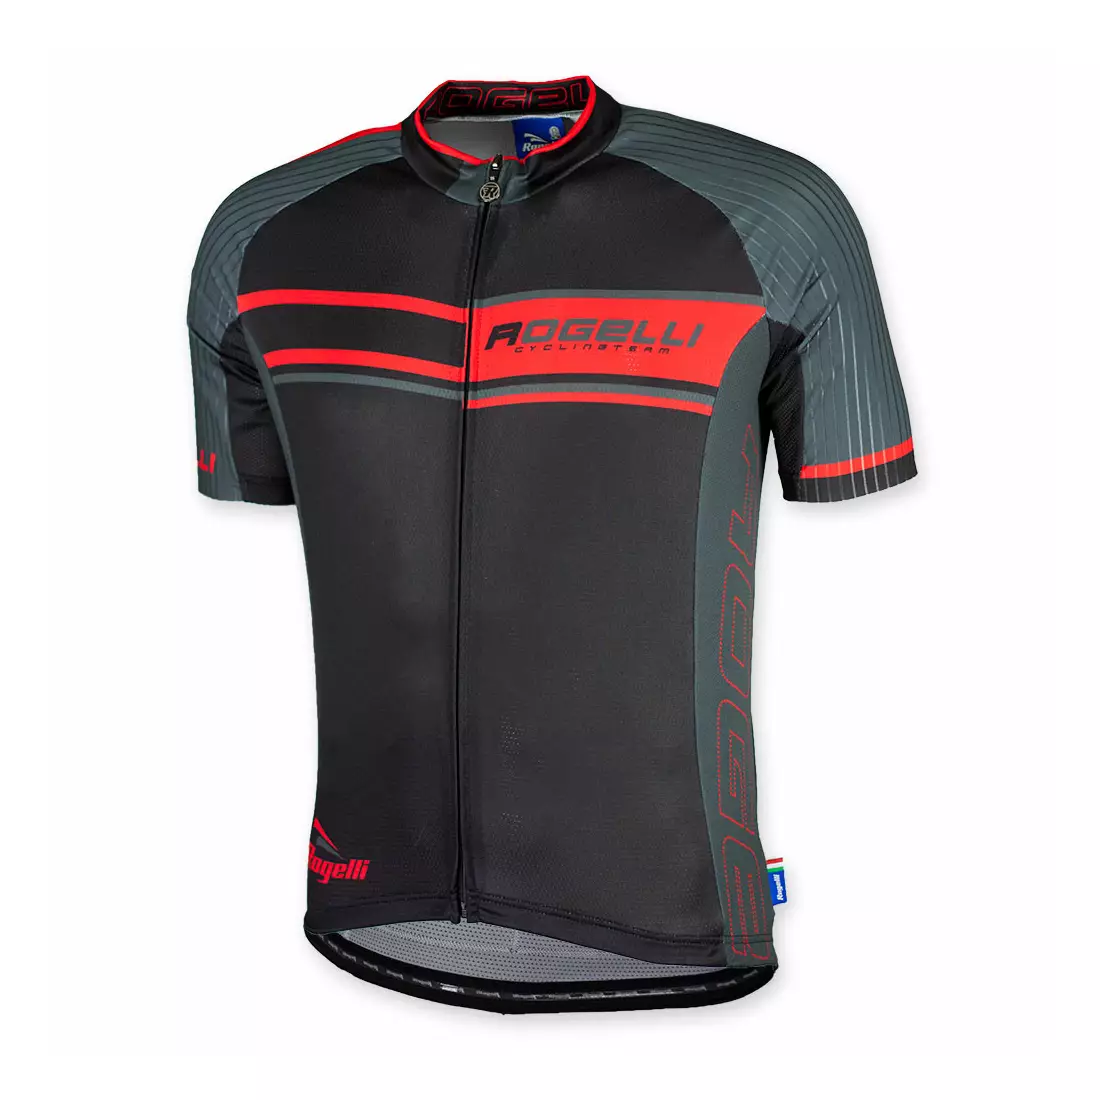 Cyklistický dres ROGELLI ANDRANO, černo-červený